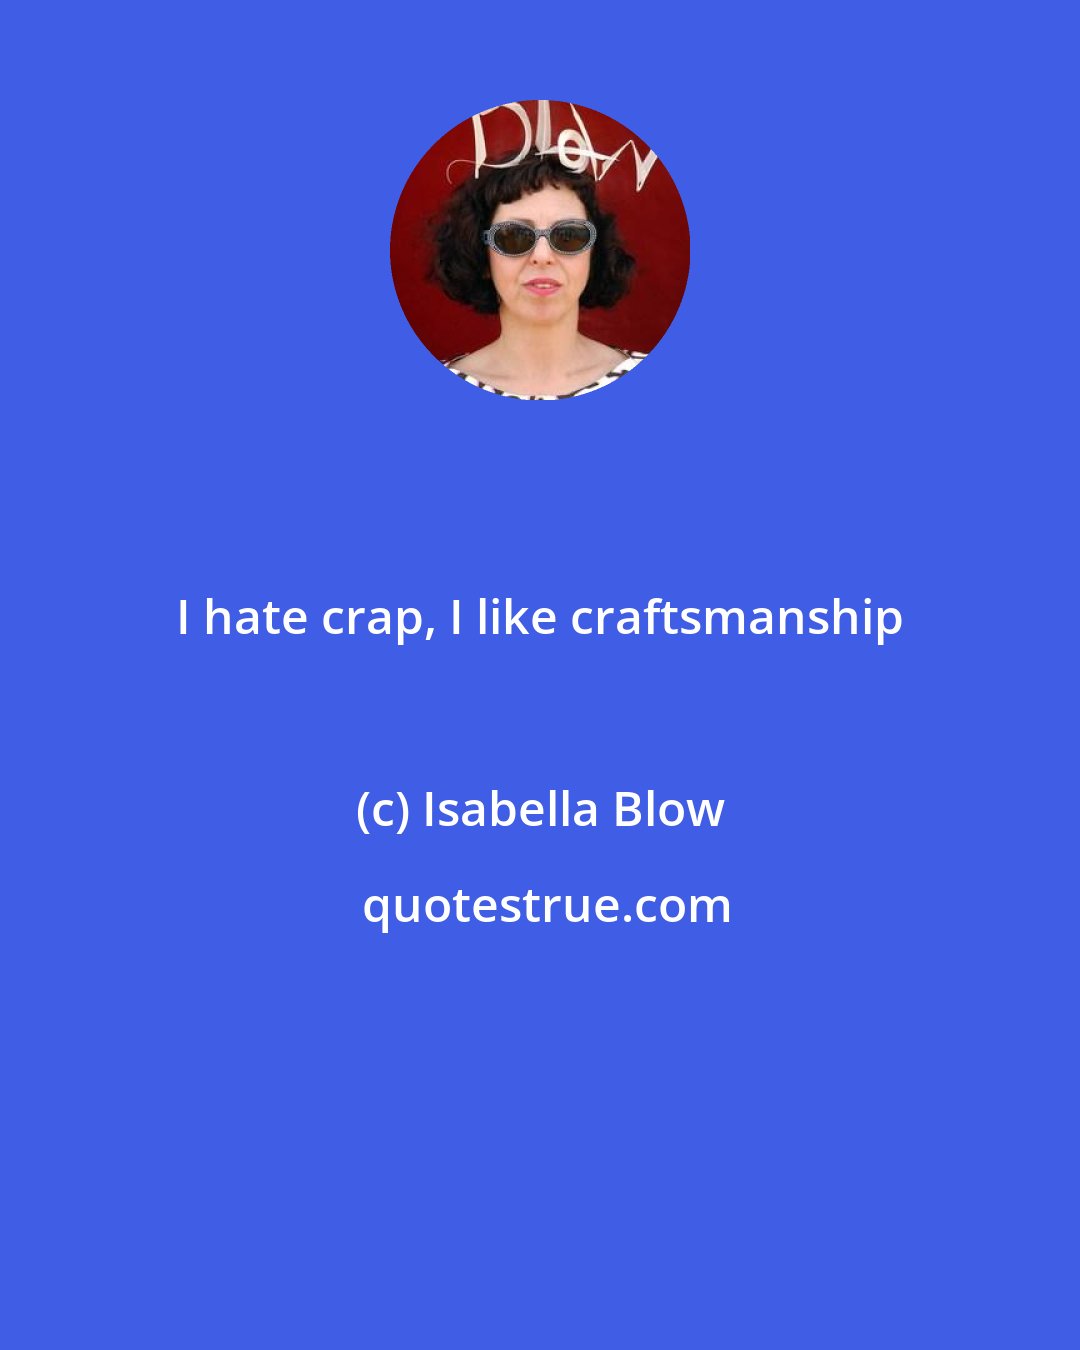 Isabella Blow: I hate crap, I like craftsmanship